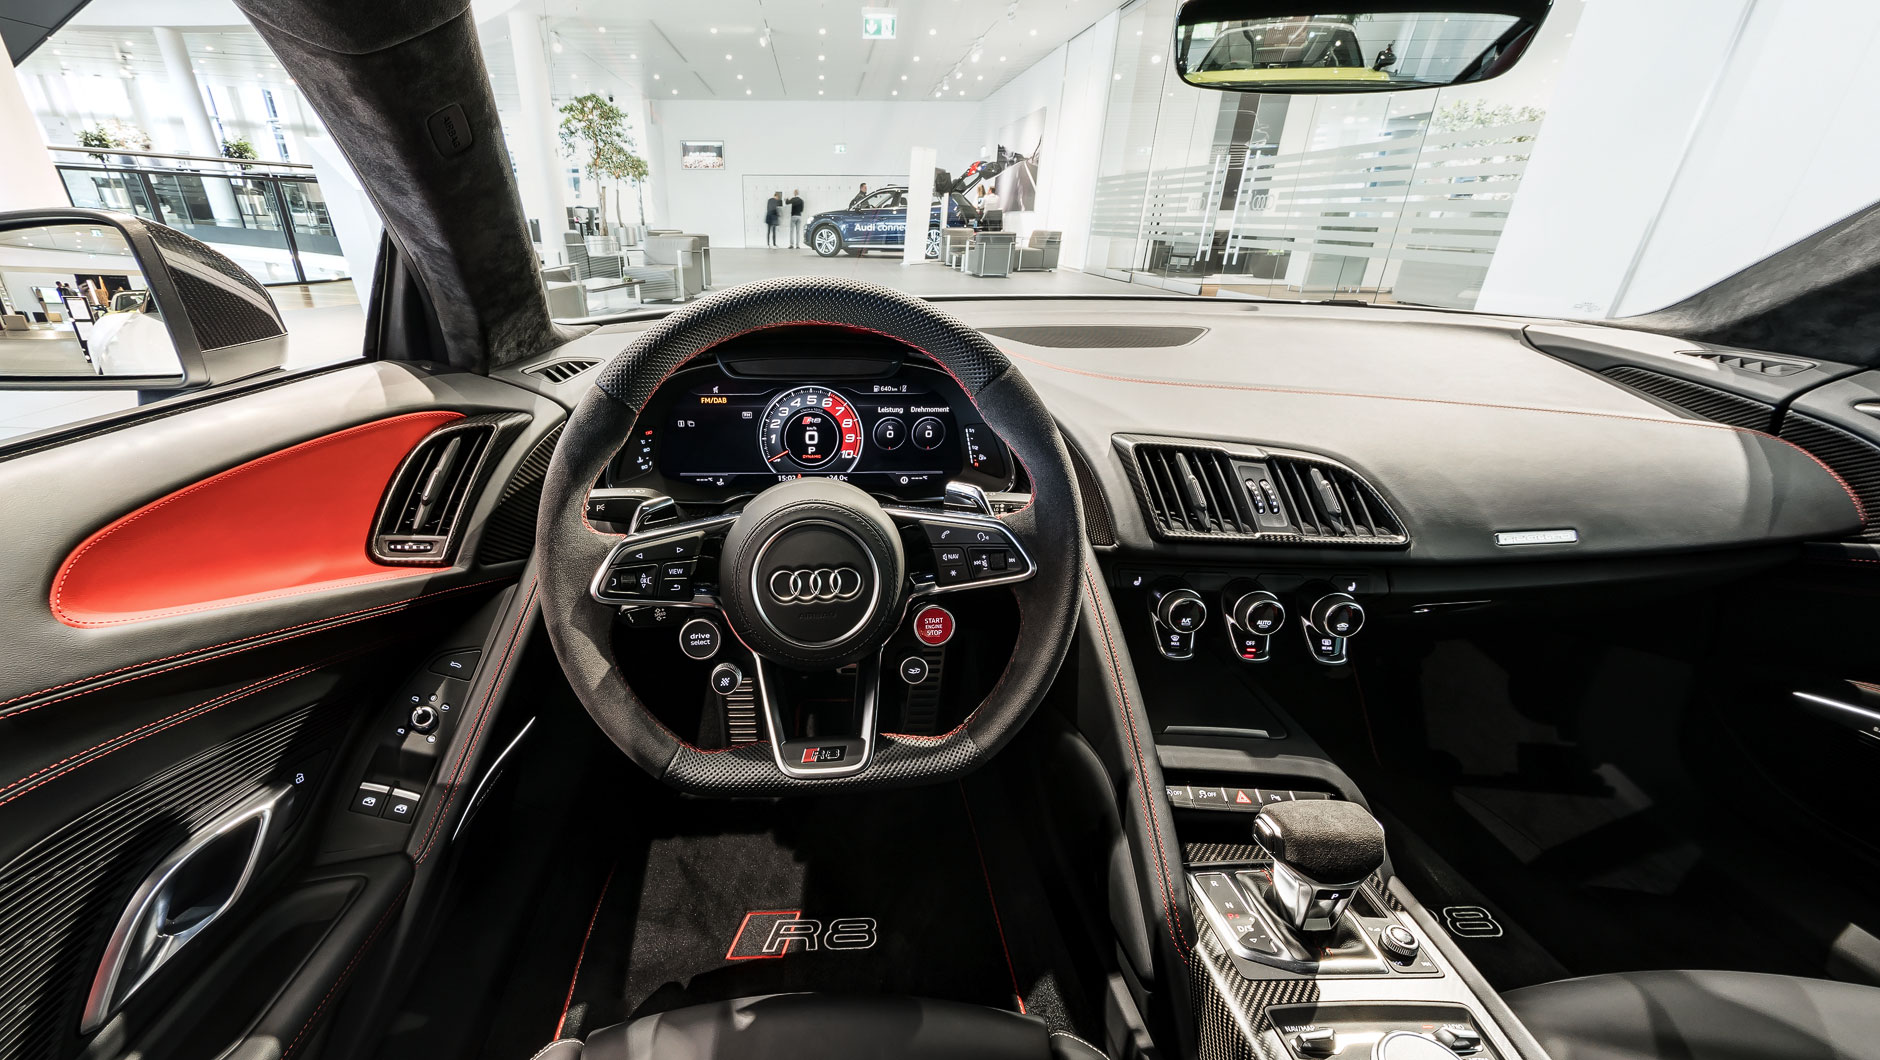 Innenraum / Interior eines Audi R8 V10 plus Coupé mit Dachhimmel in Alcantara mit Rautensteppung.